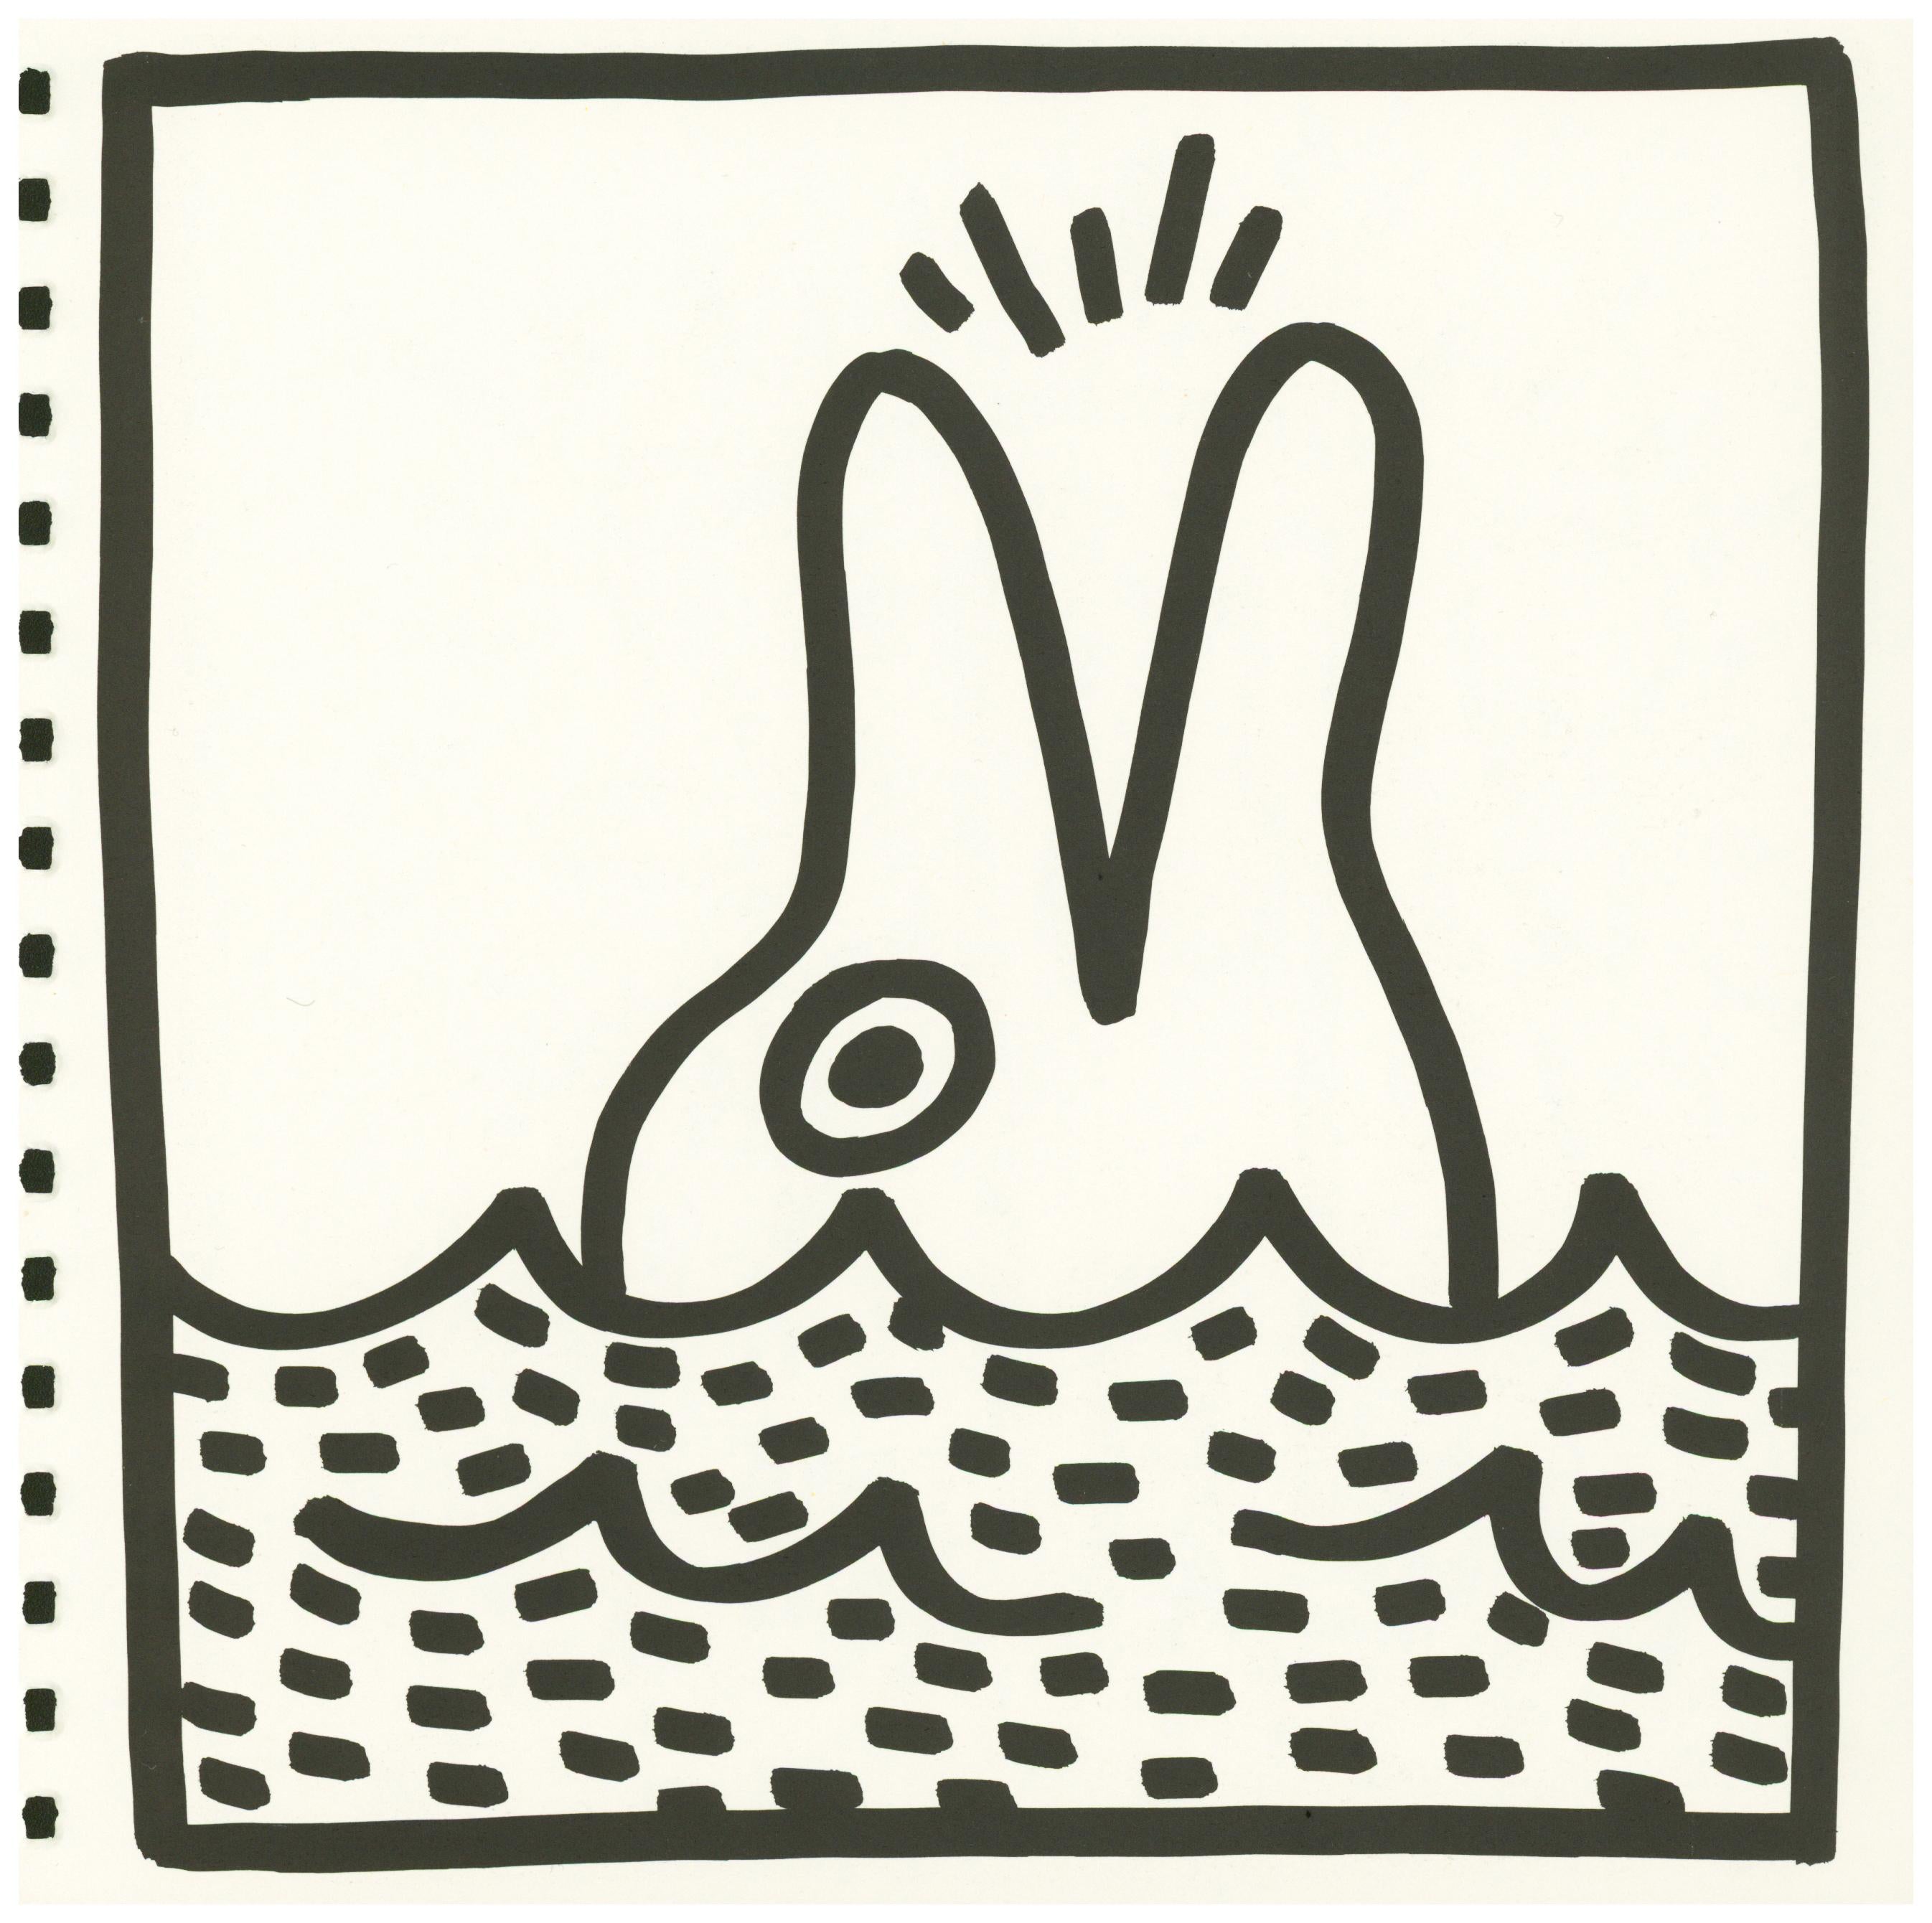 Keith Haring (ohne Titel) Delphin-Lithographie 1982:
Doppelseitige lithografische Beilage aus dem bahnbrechenden, spiralgebundenen Ausstellungskatalog der Galerie Tony Shafrazi von 1982, der anlässlich der ersten Einzelausstellung von Keith Haring